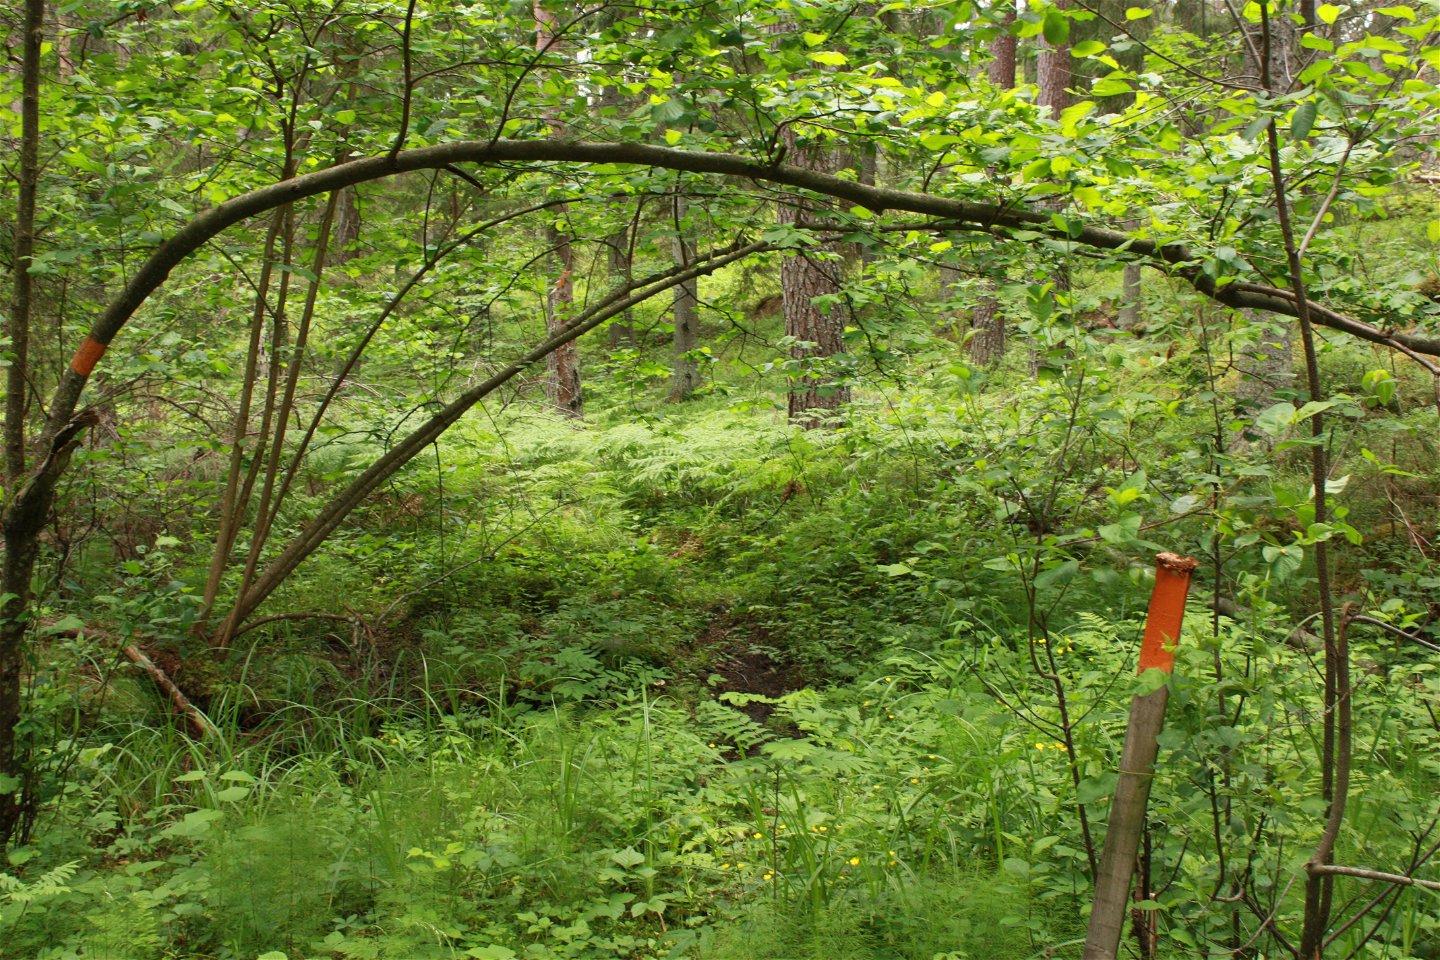 I en snårig skog med högt gräs står en stolpe med orange ledmarkering på.